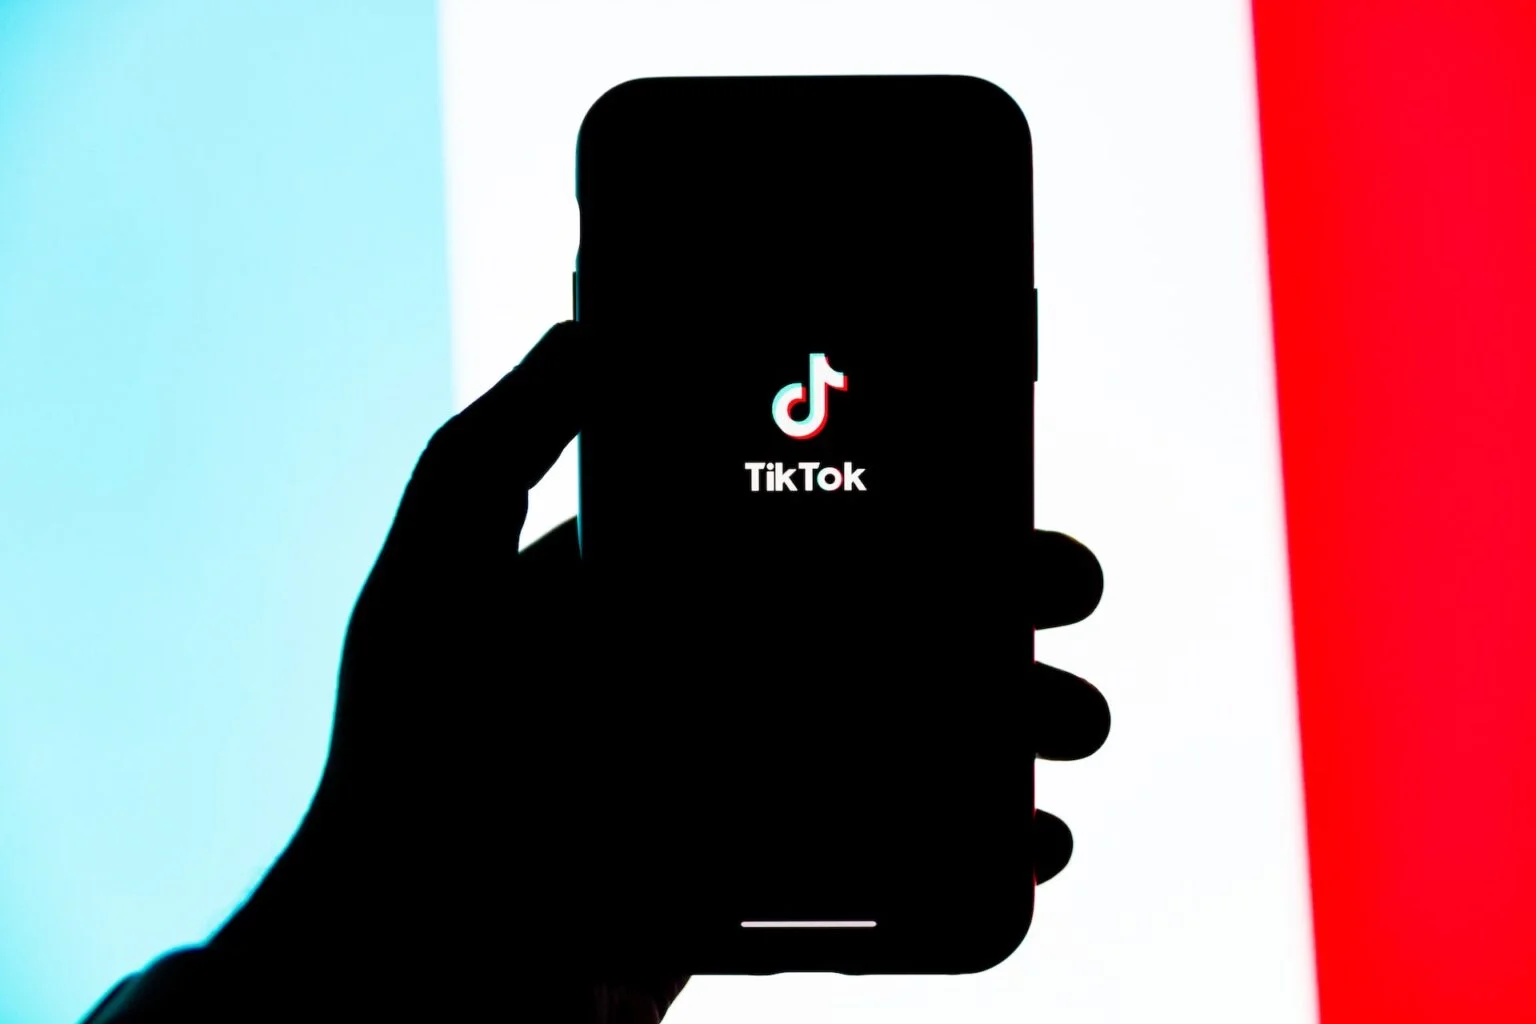 Хакеры украли исходный код TikTok и внушительный массив пользовательских данных